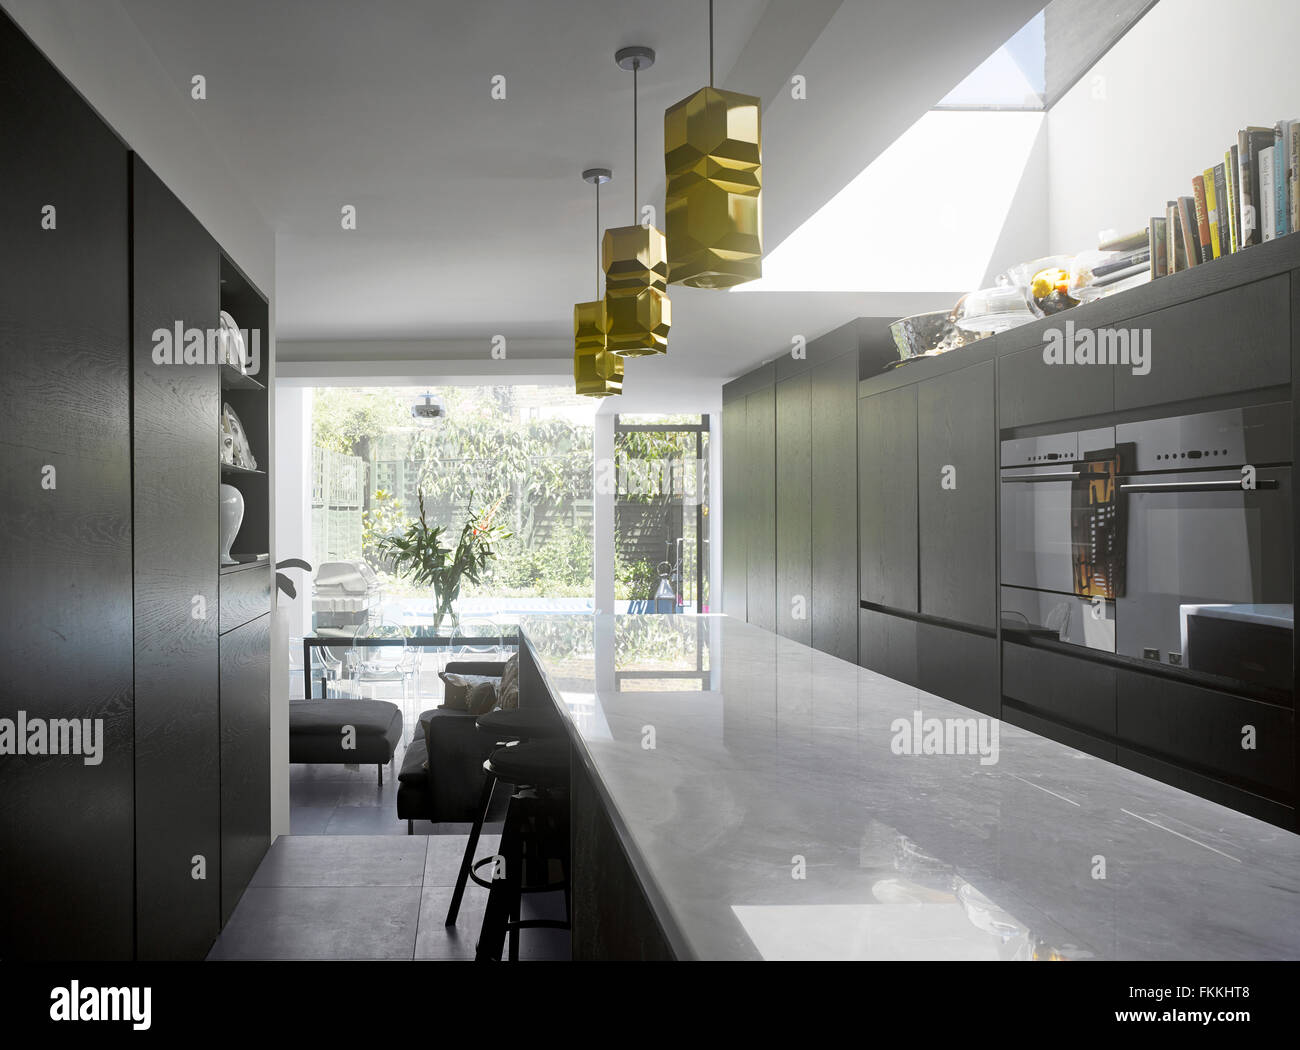 Una vista de una cocina de planta abierta en una casa moderna, una nueva build. Foto de stock